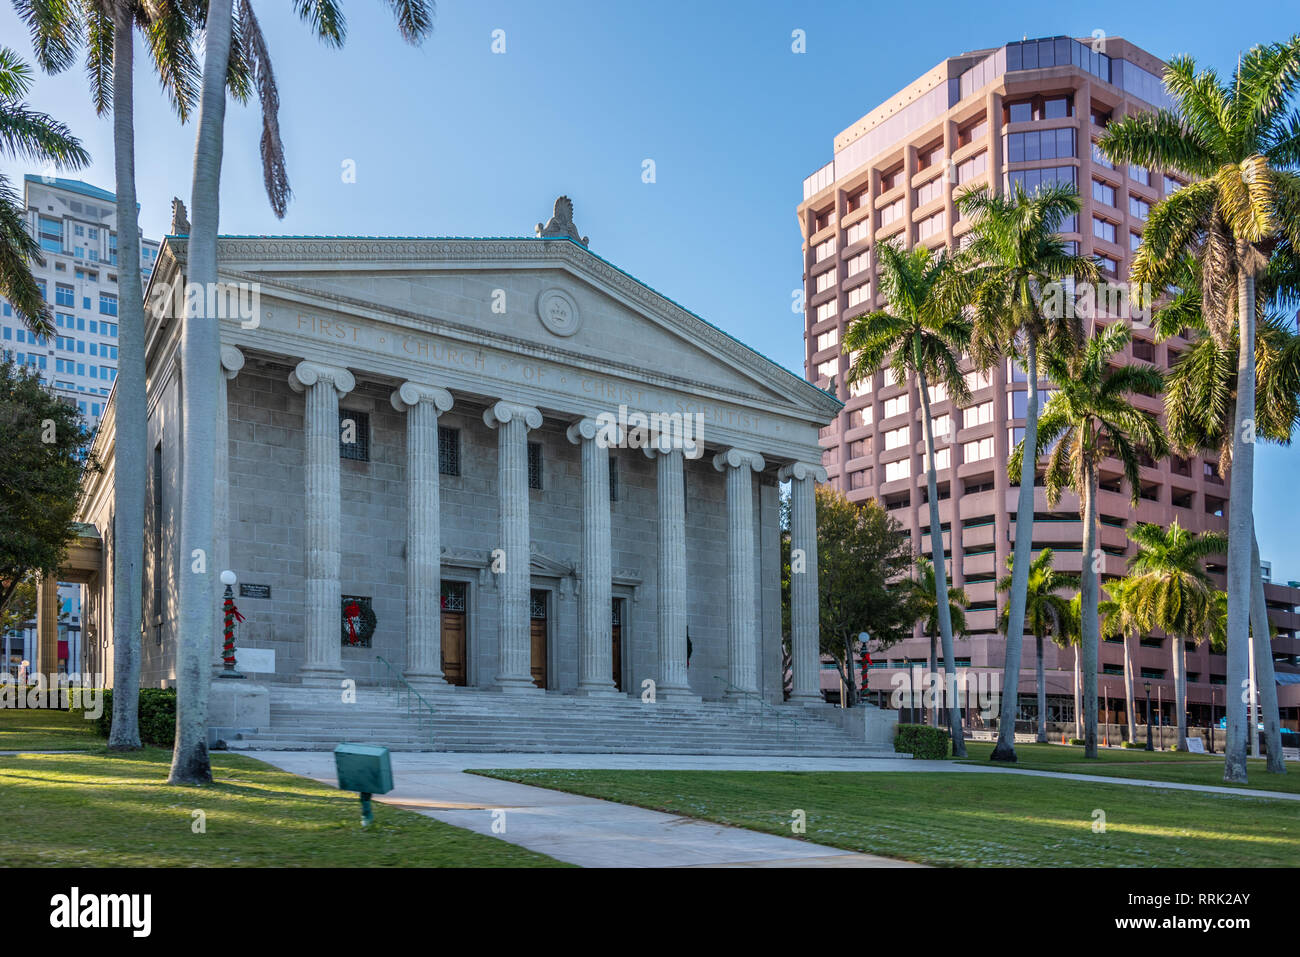 L'architecture variée le long du sud de Flagler bord de mer en centre-ville de West Palm Beach, en Floride. (USA) Banque D'Images